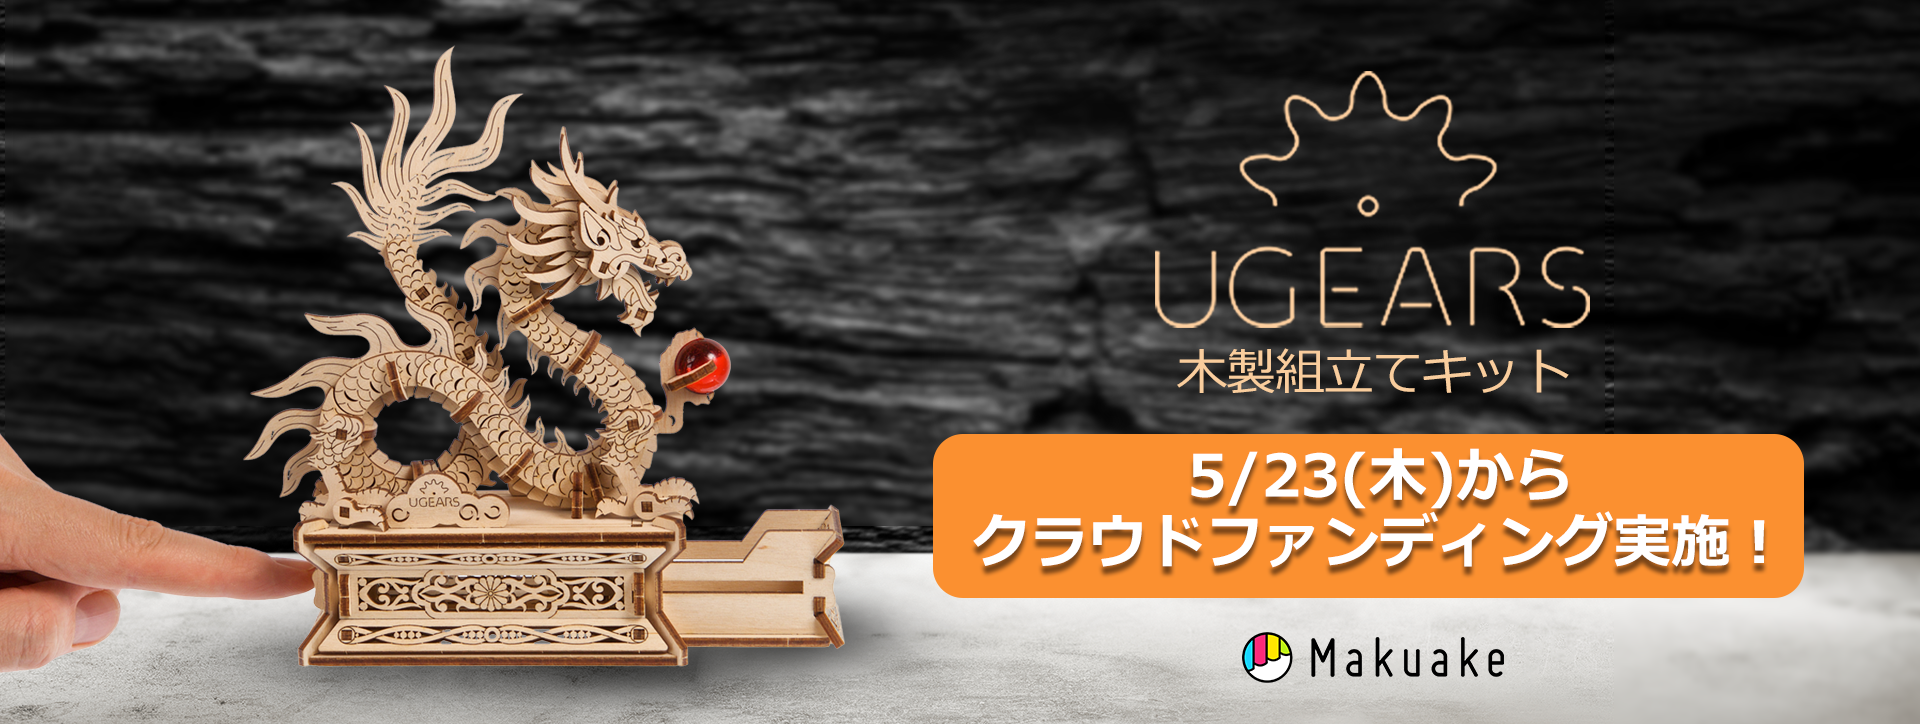 木製組立てキット「Ugears」5/23(木)からMakuakeにてクラウドファンディング開始！